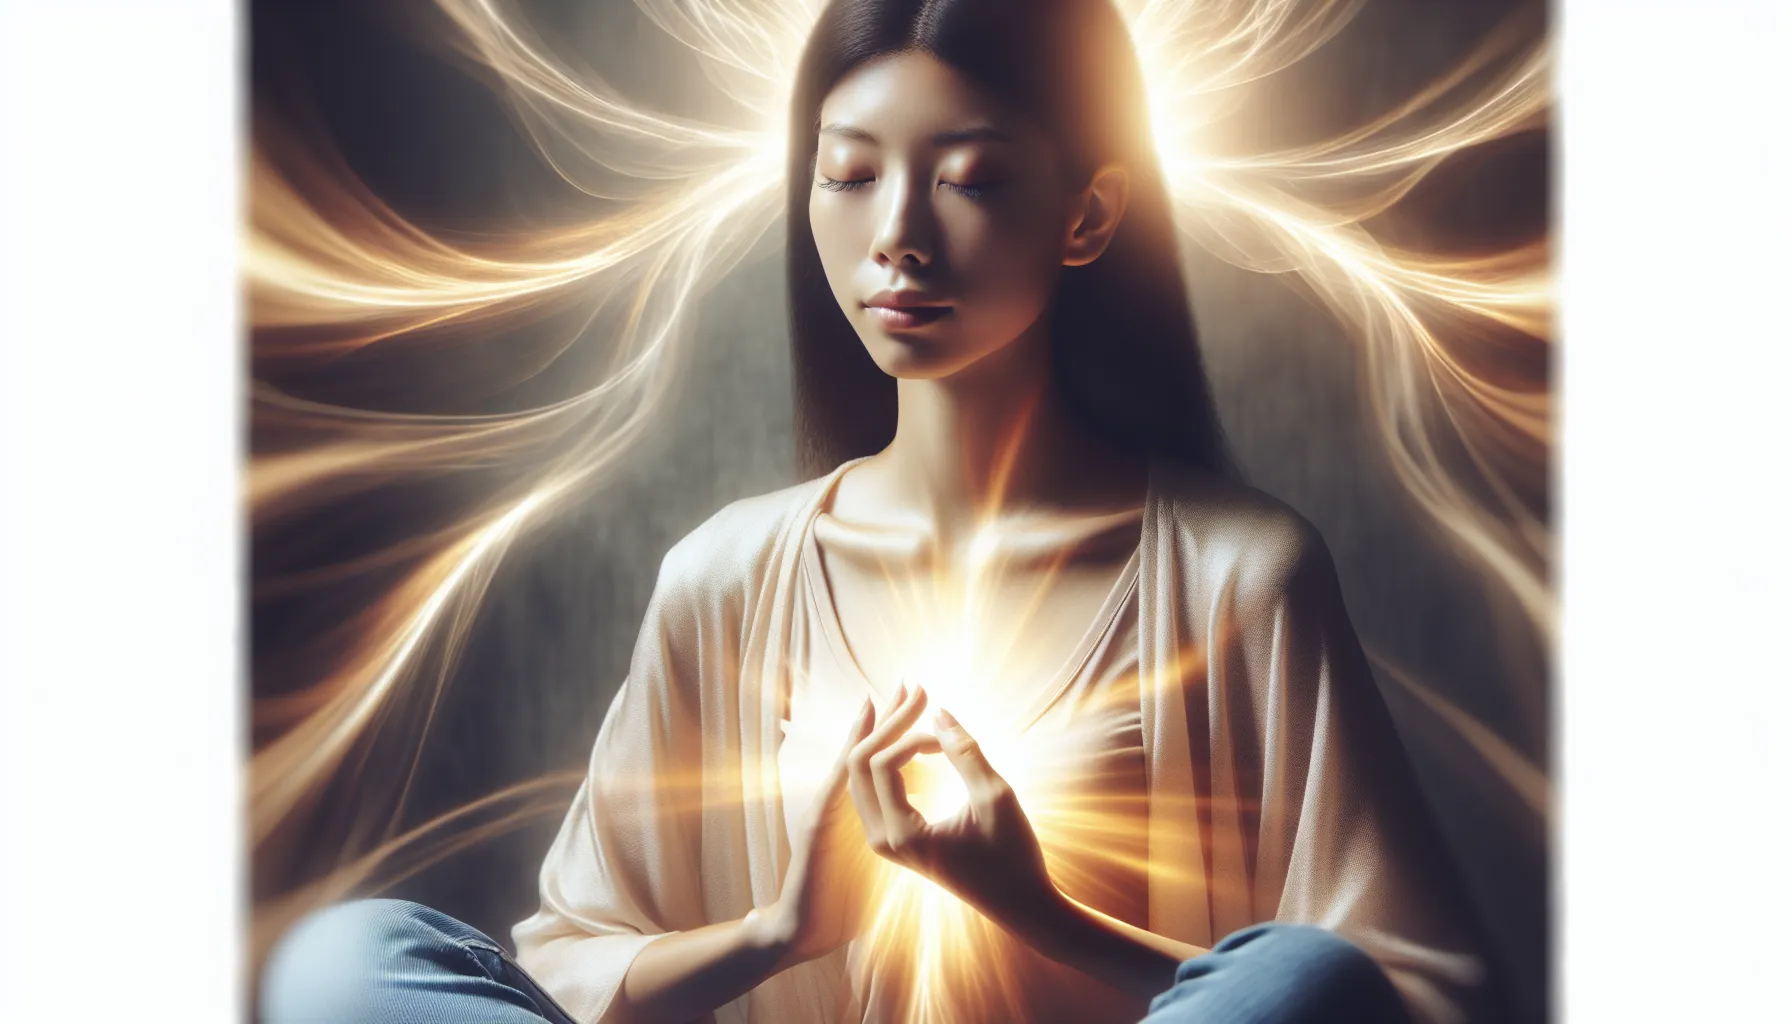 Persona con los ojos cerrados en meditación, rodeada de un aura brillante y acogedora, simbolizando la recepción del Espíritu Santo de manera íntima y personal.